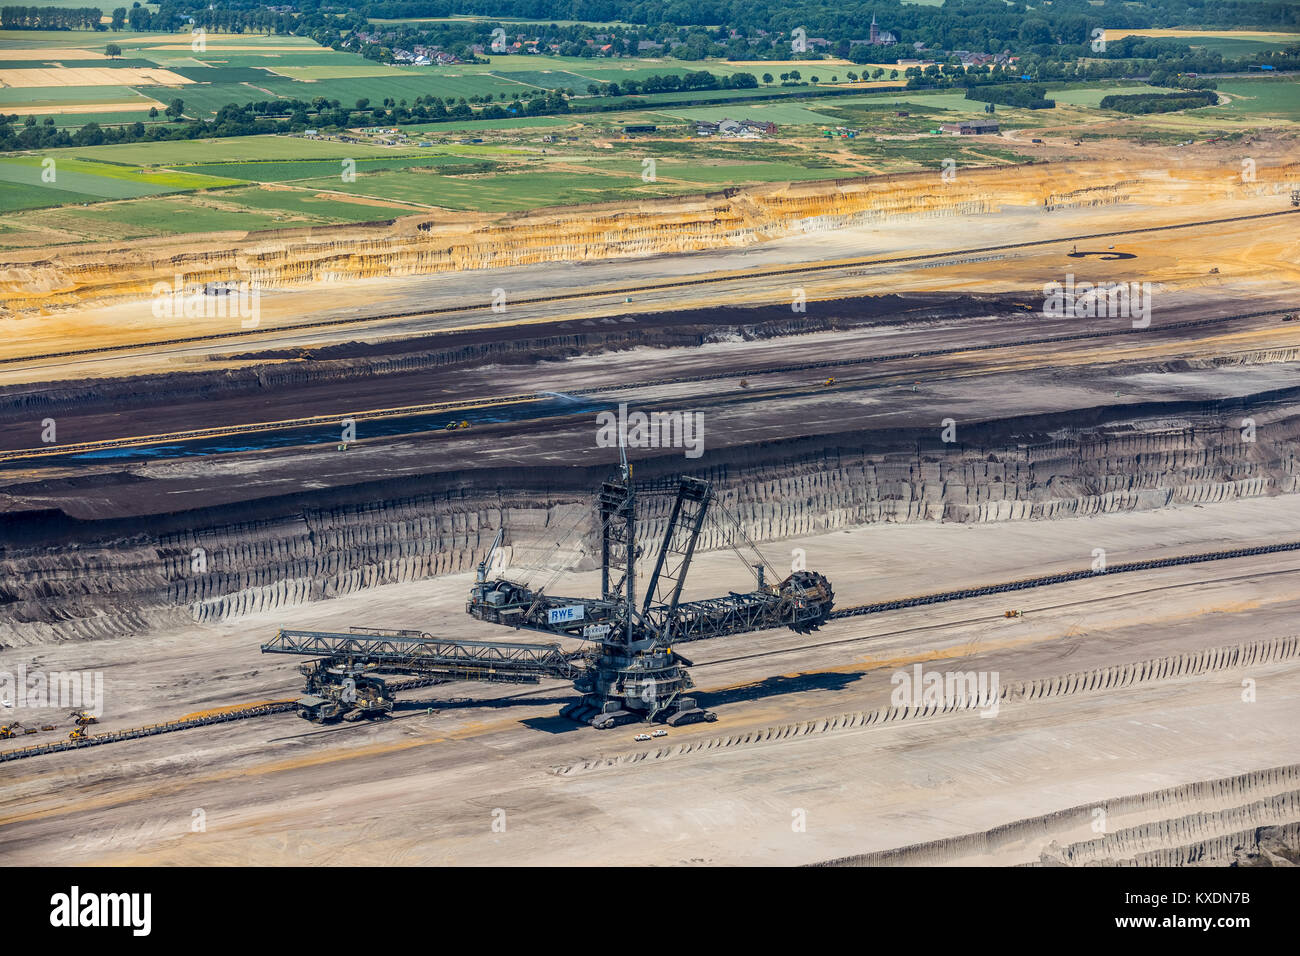 Lignite-coal excavator, open-cast lignite mine Garzweiler, RWE-Power, Rheinische Braunkohlerevier, Borschemich, Jüchen Stock Photo